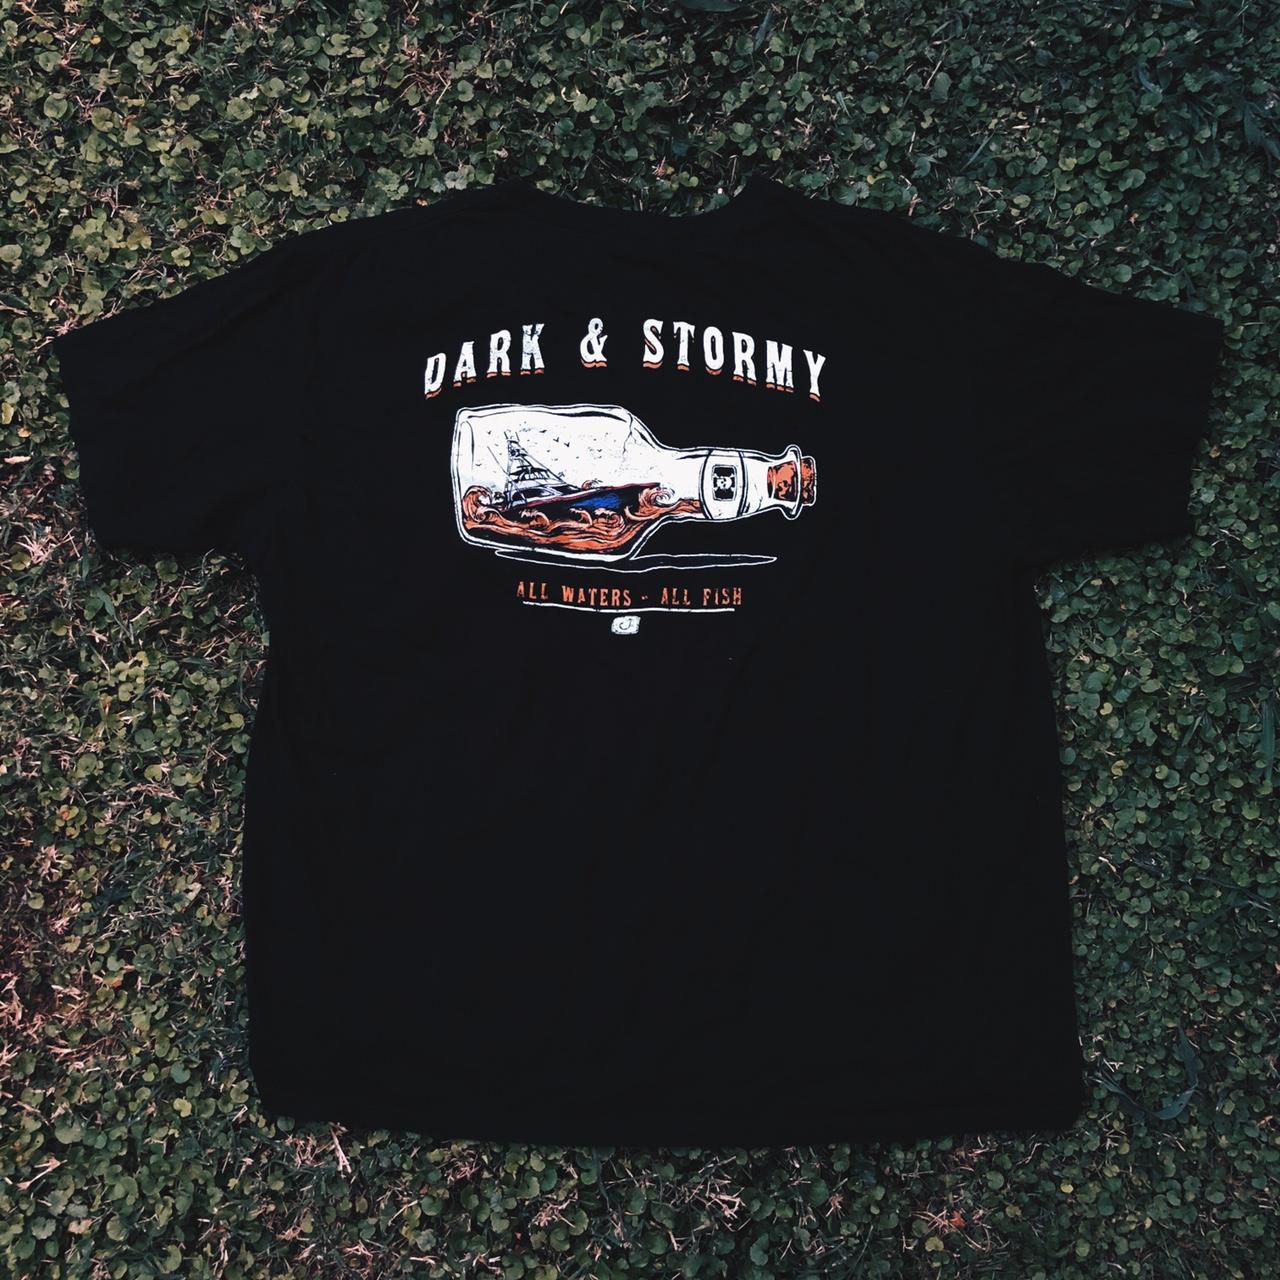 Black Avid Fishing Dark & Stormy T-shirt, Size